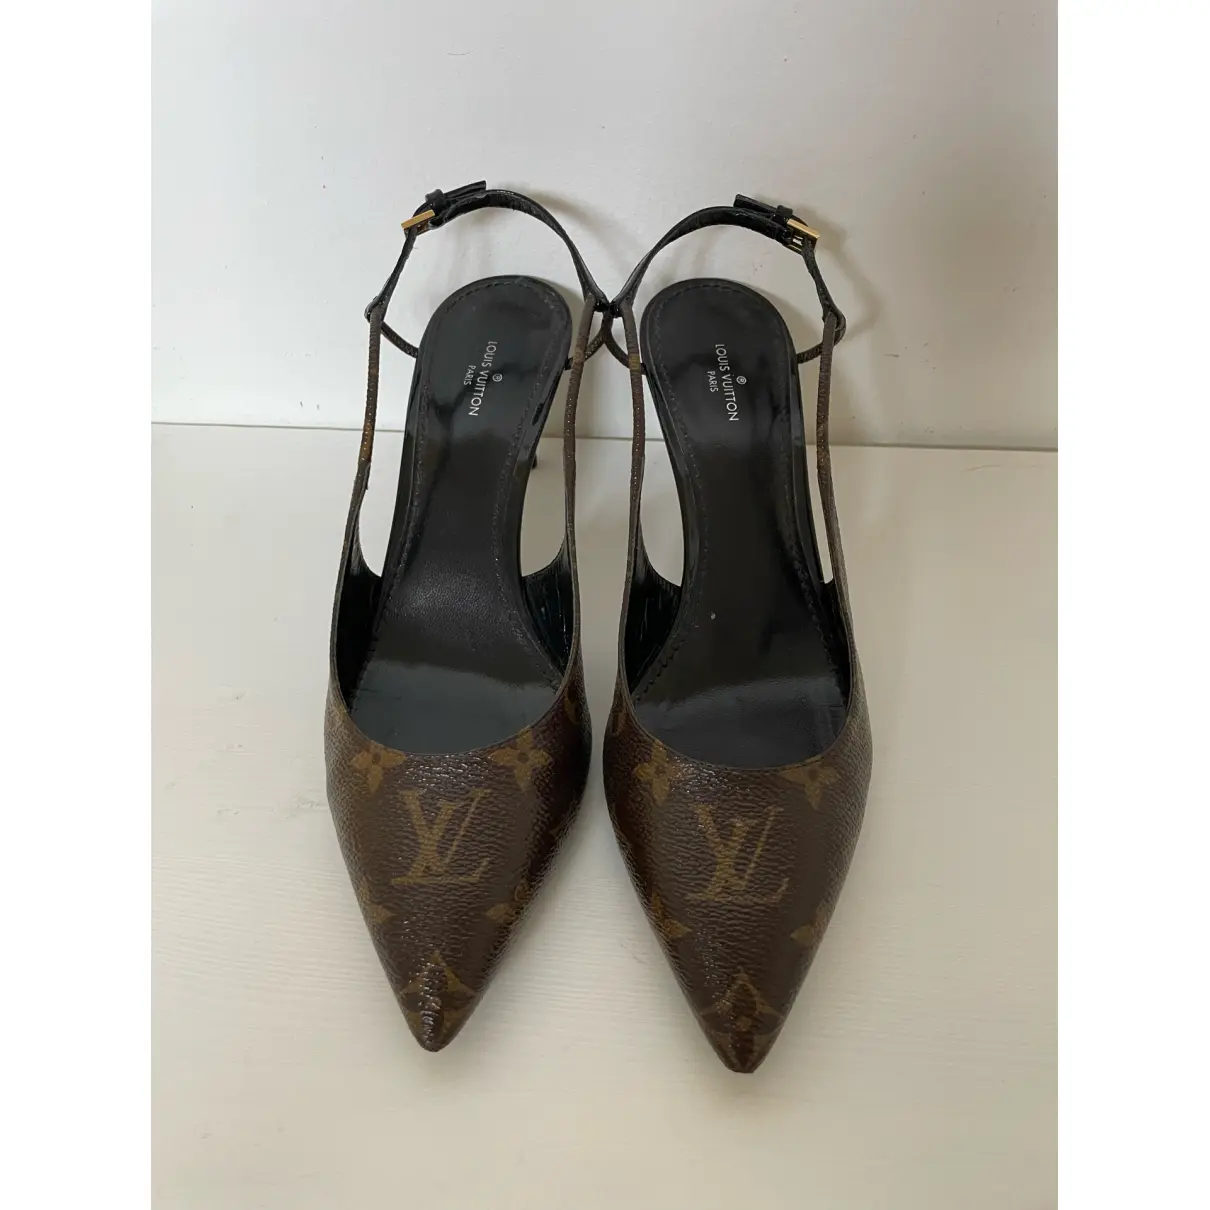 Buy Louis Vuitton Chérie cloth sandals online